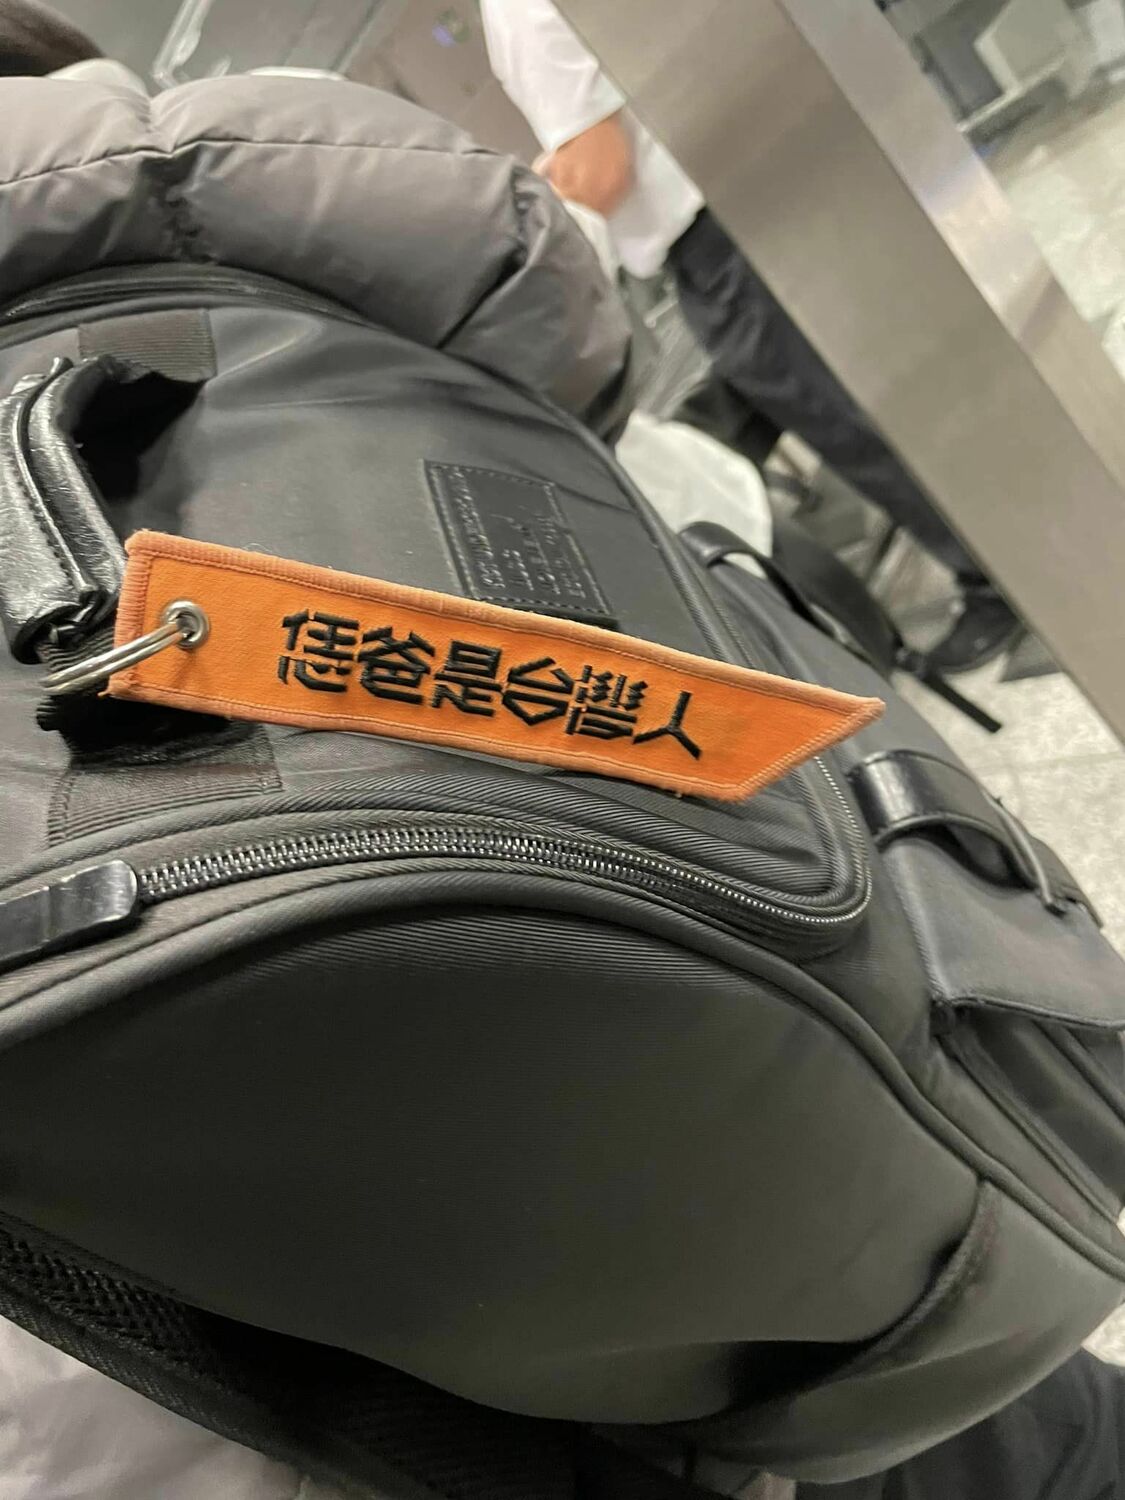 謝志偉分享為德國國會友台小組送機照片時，分享一個機場小故事，一個年輕人背包上繫了一個帶子，上面寫著「恁爸是台灣人」！   圖：翻攝自謝志偉臉書